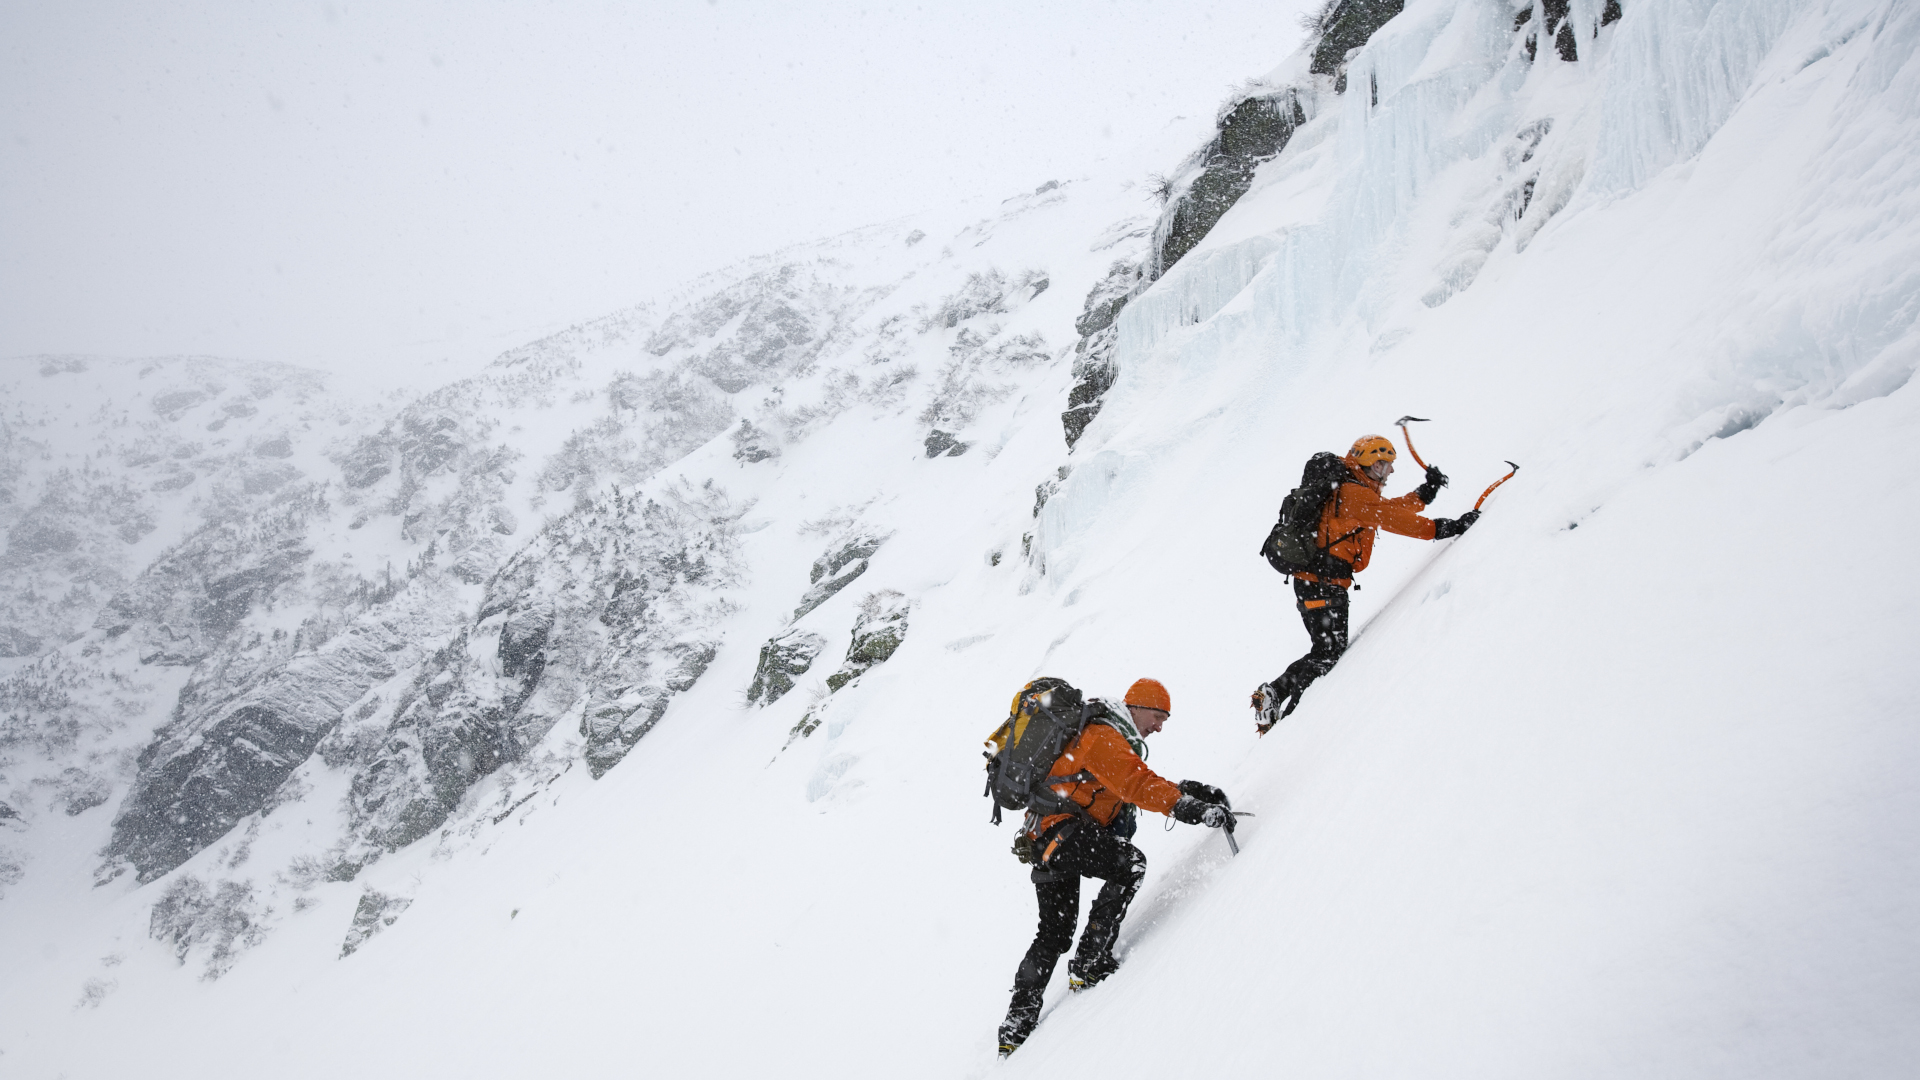 Dos personas escalando en hielo una montaña nevada